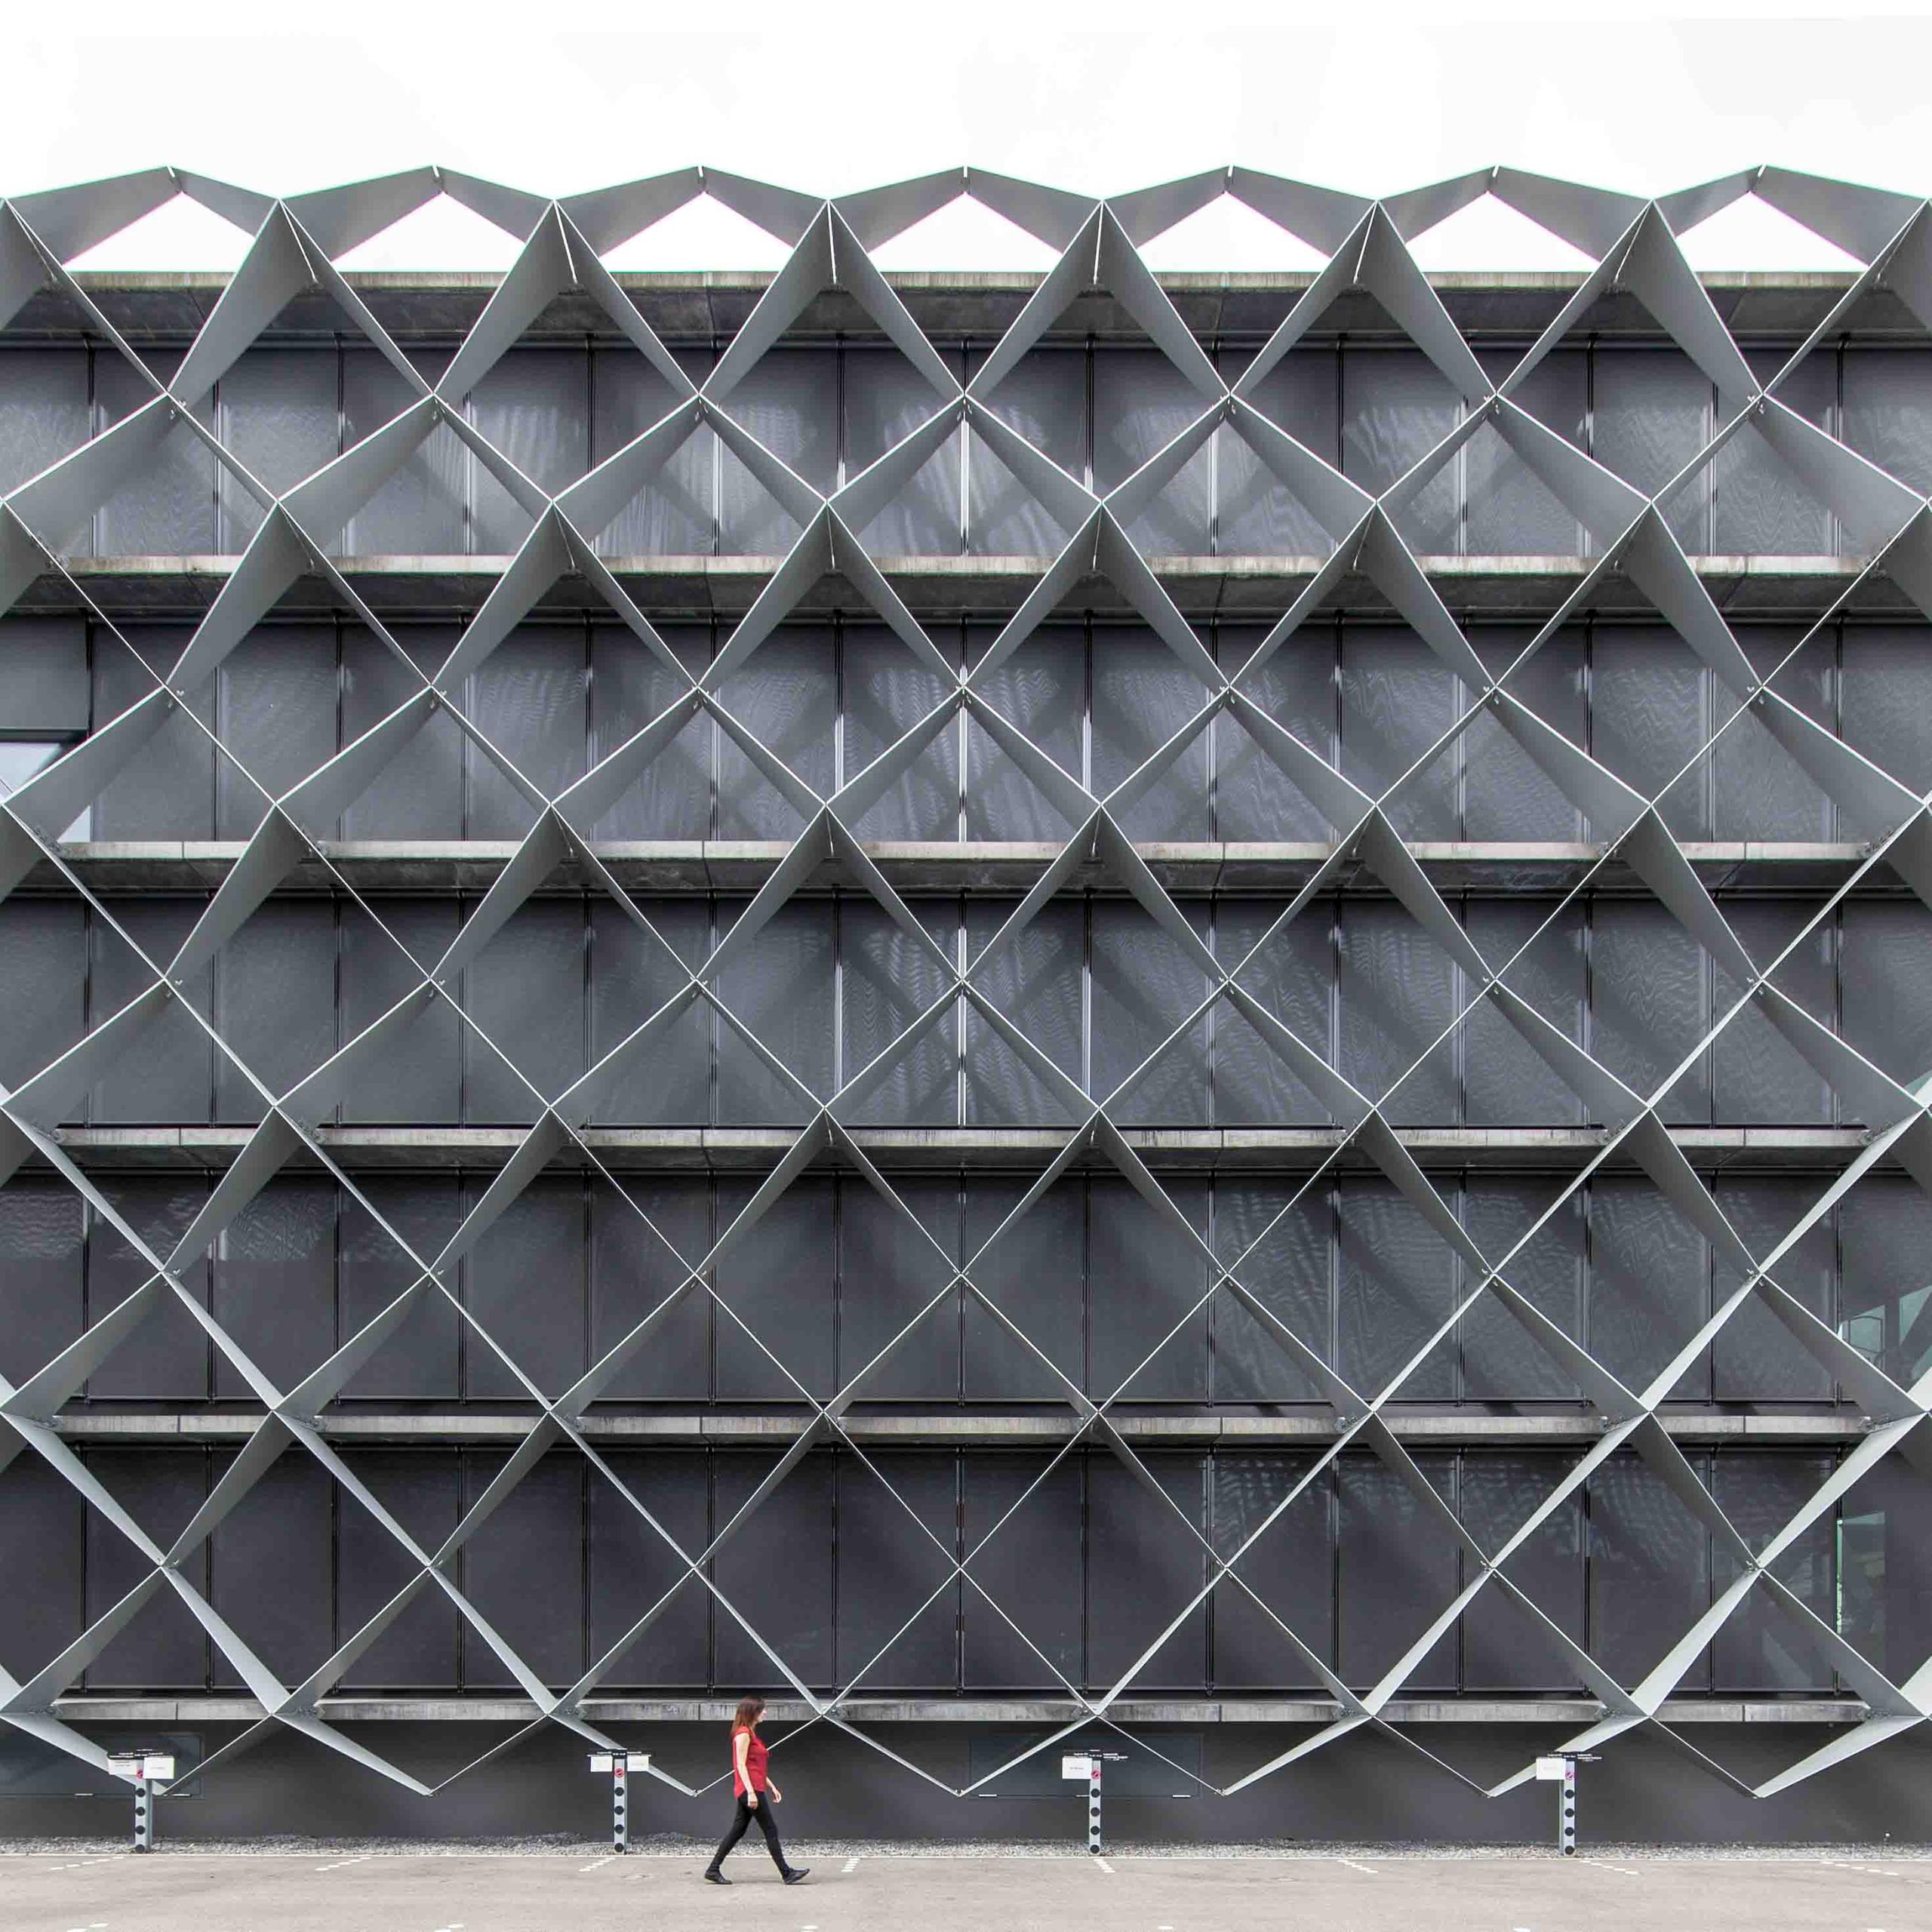 Facade of a building